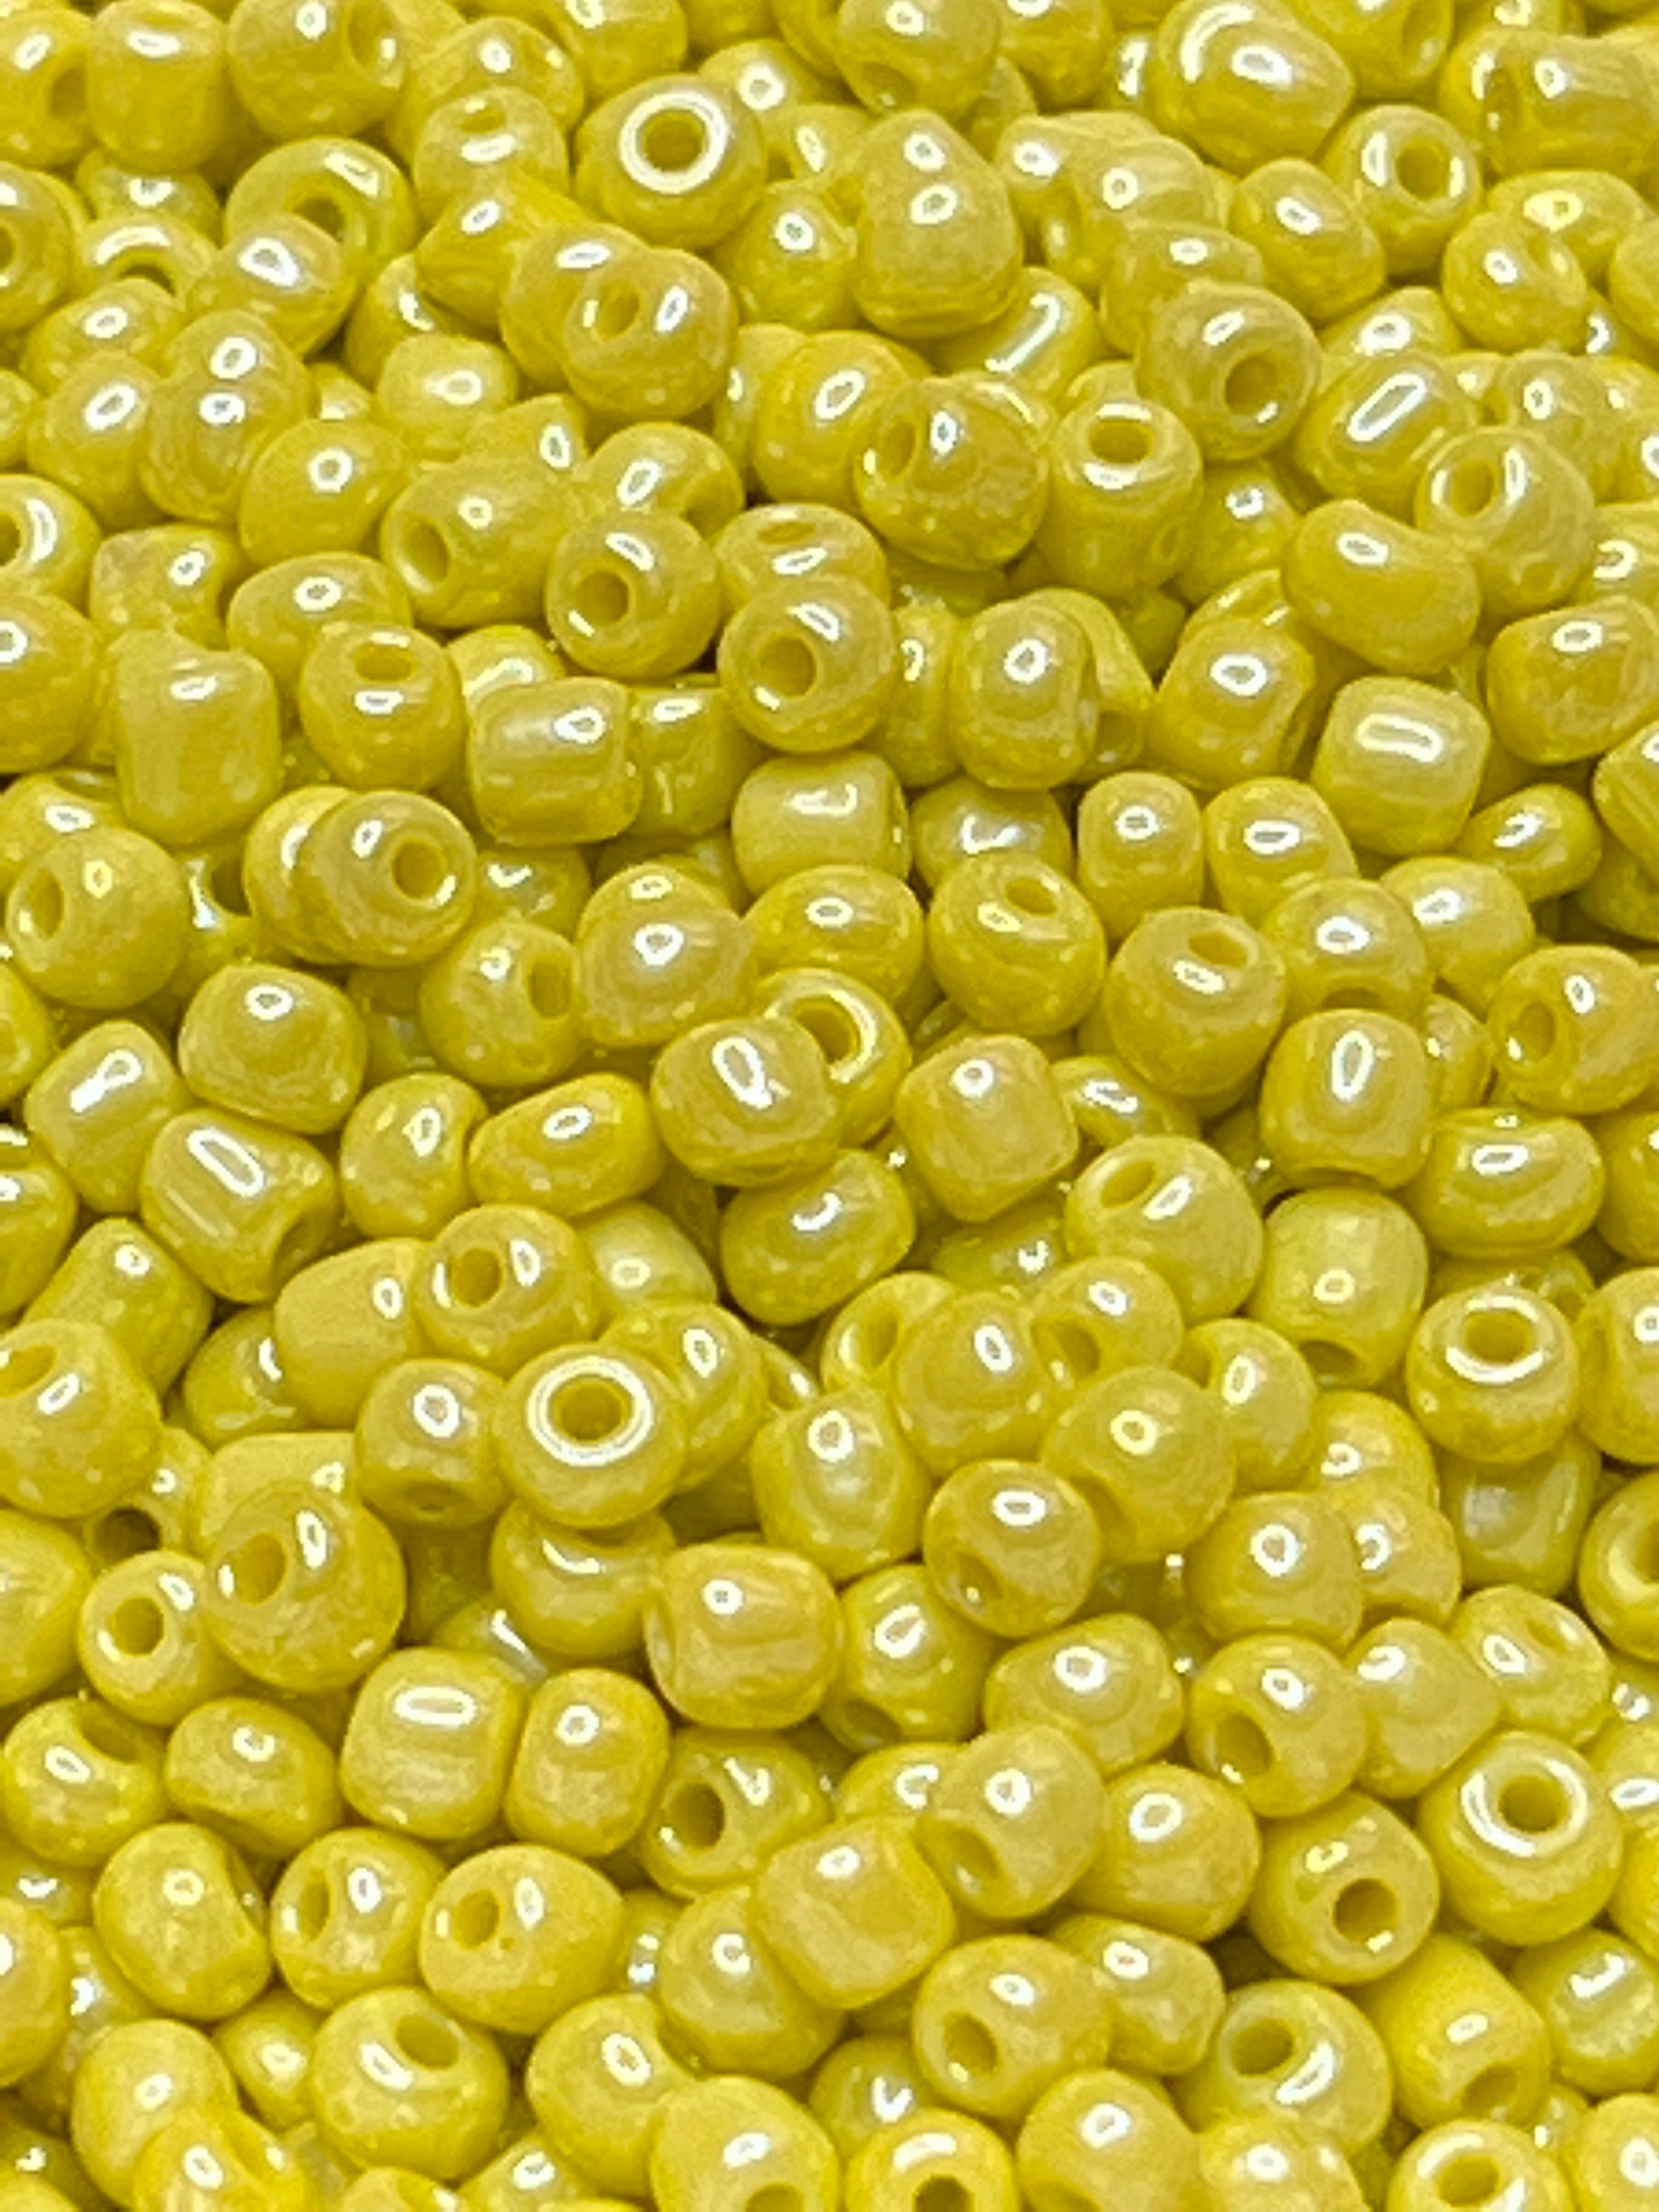 Matte Iridescent Glass Seed Beads, 4mm 6/0 Glass Round Seed Beads, Matte  Orange AB Seed Beads, Rocailles Beads, Beading Supplies #1177